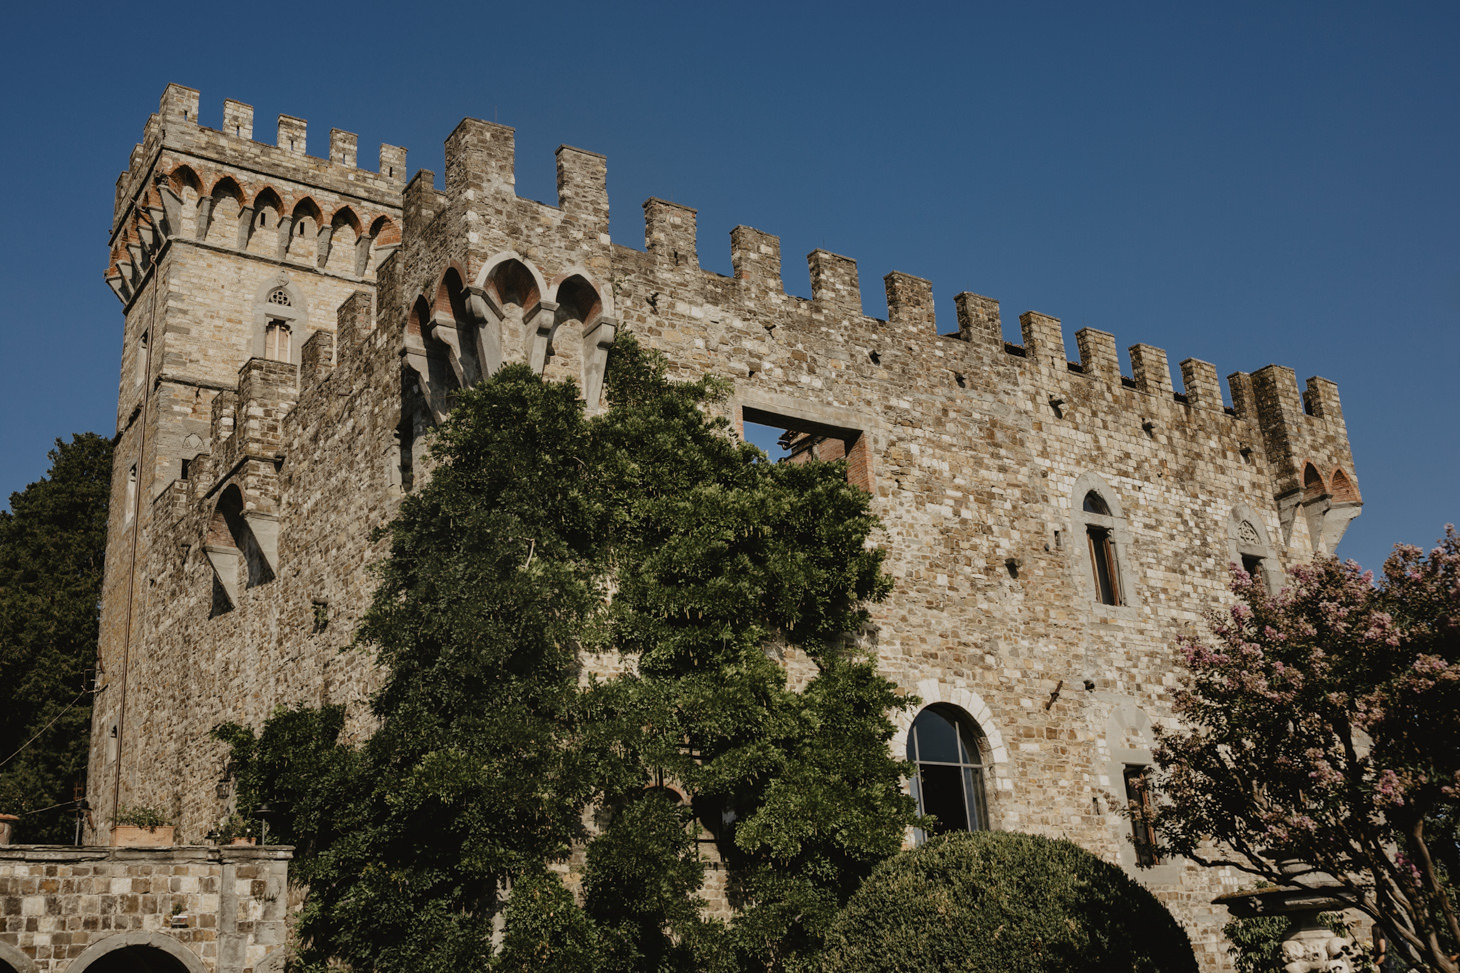 Castello di Vincigliata near Florence